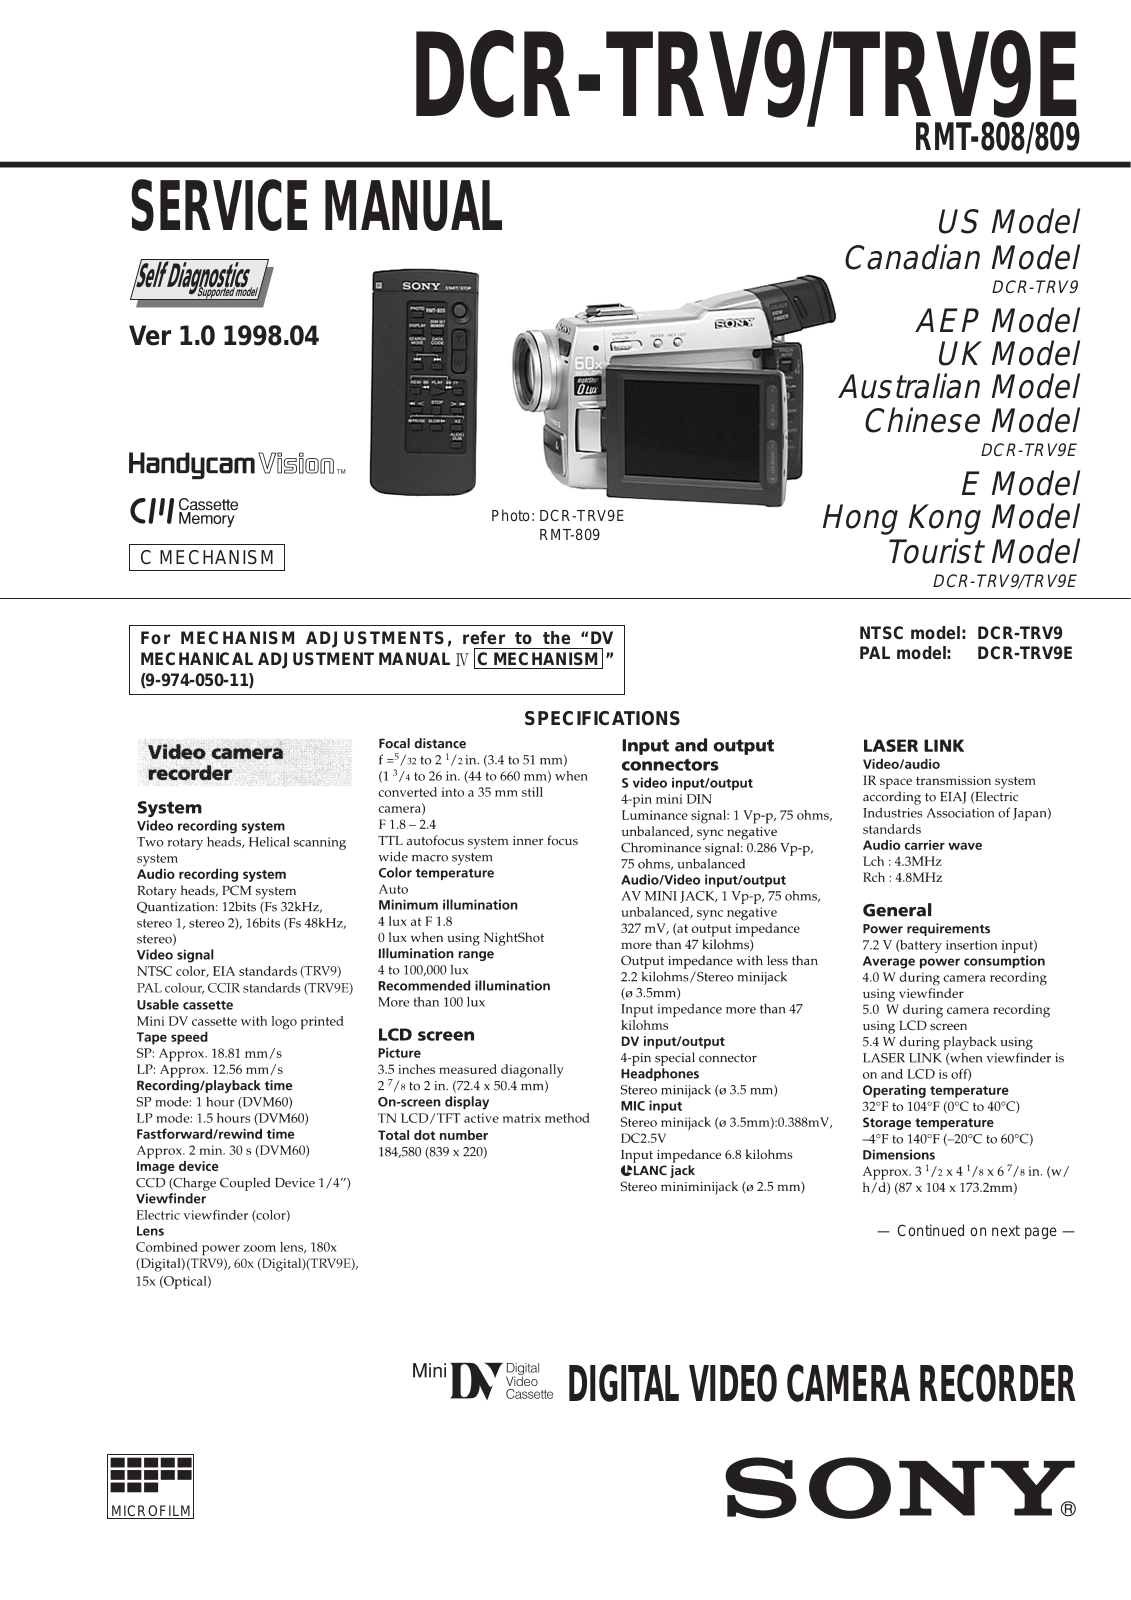 Sony RMT-809, RMT-808, DCR-TRV9E, DCR-TRV9 Service Manual